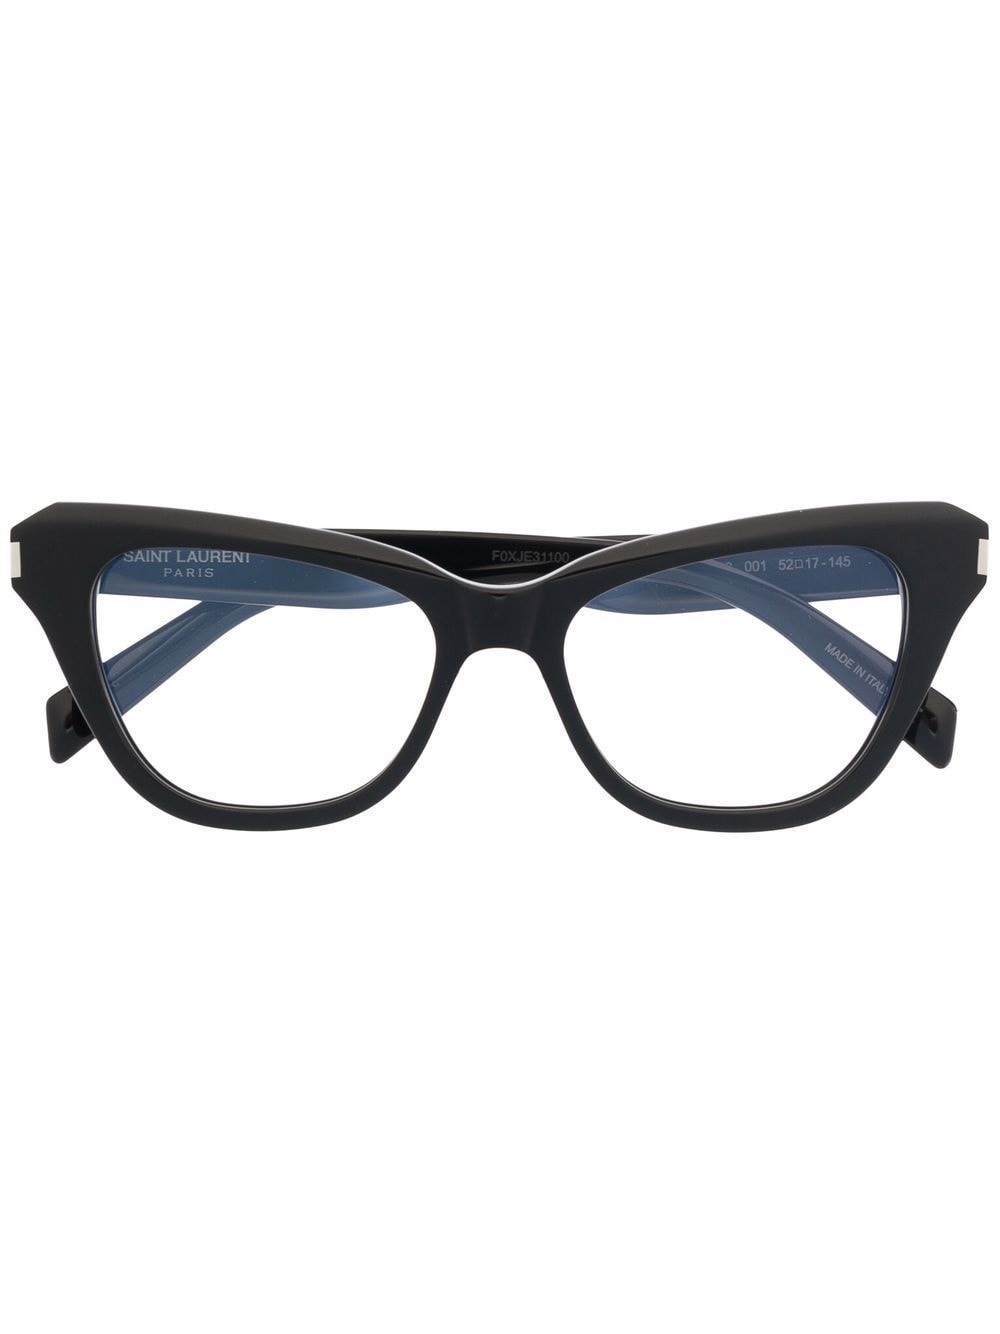 Saint Laurent Eyewear Klassische Cat-Eye-Brille - Schwarz von Saint Laurent Eyewear